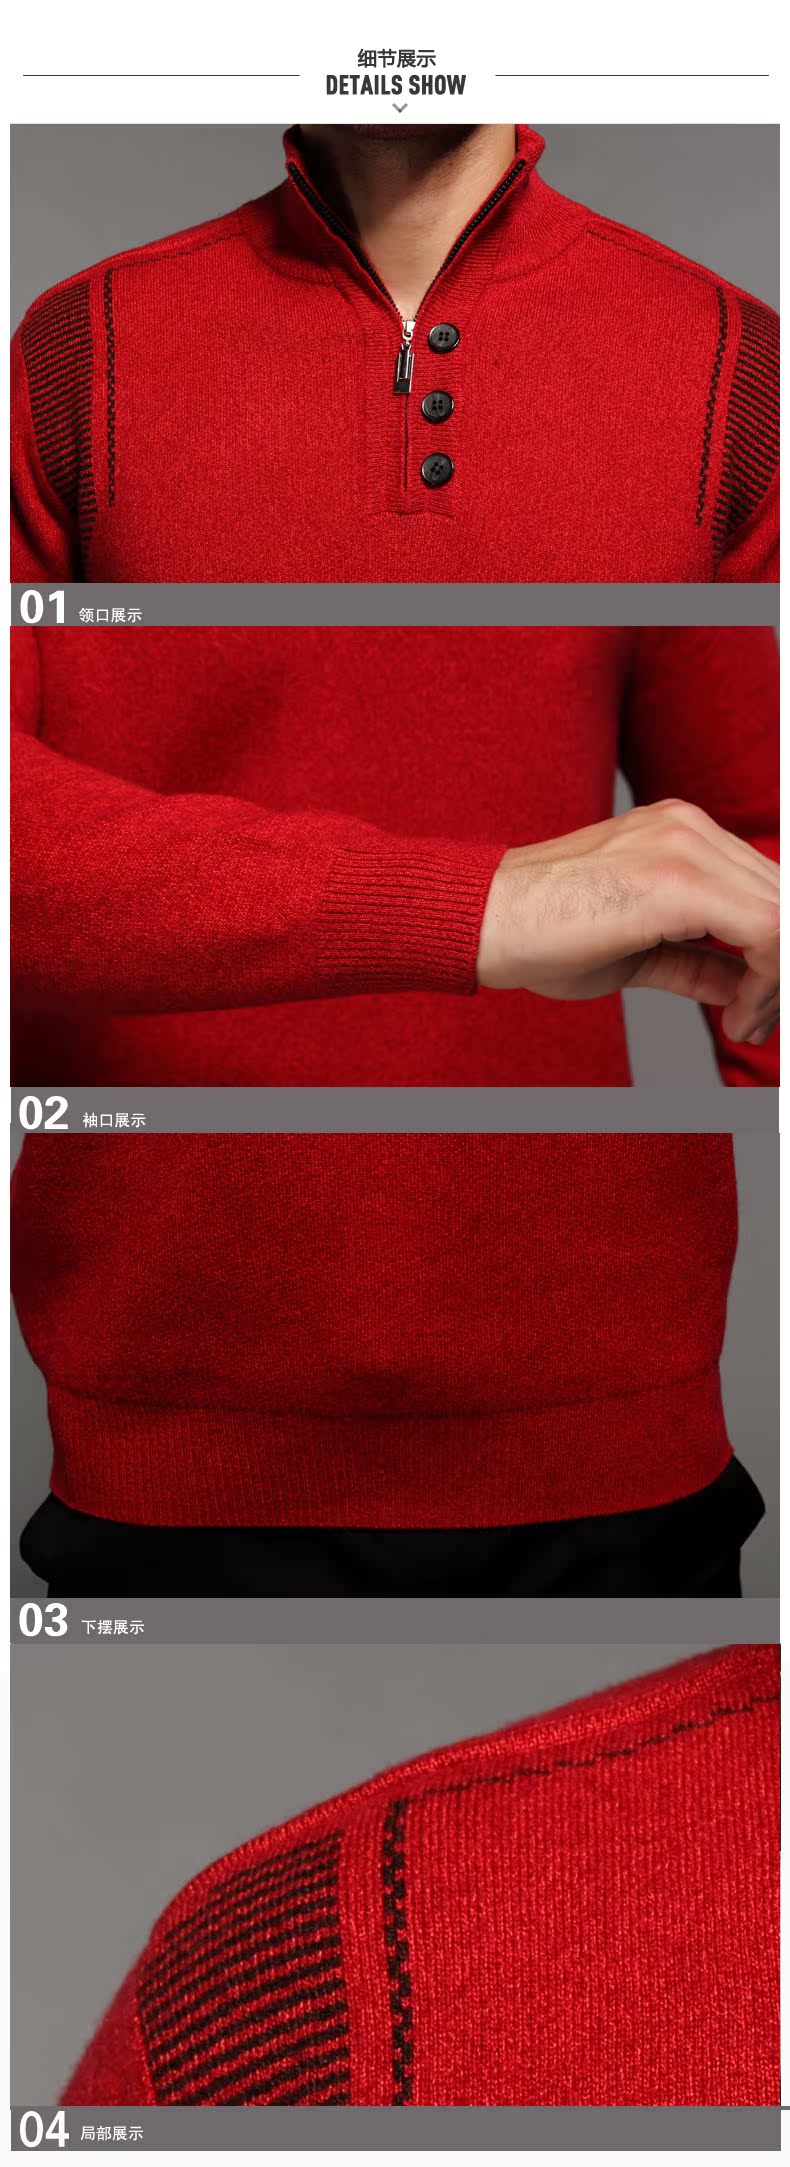 贝龙羊绒 春季新款简约半高拉链领纯色羊绒衫 男套头针织毛衣 81516